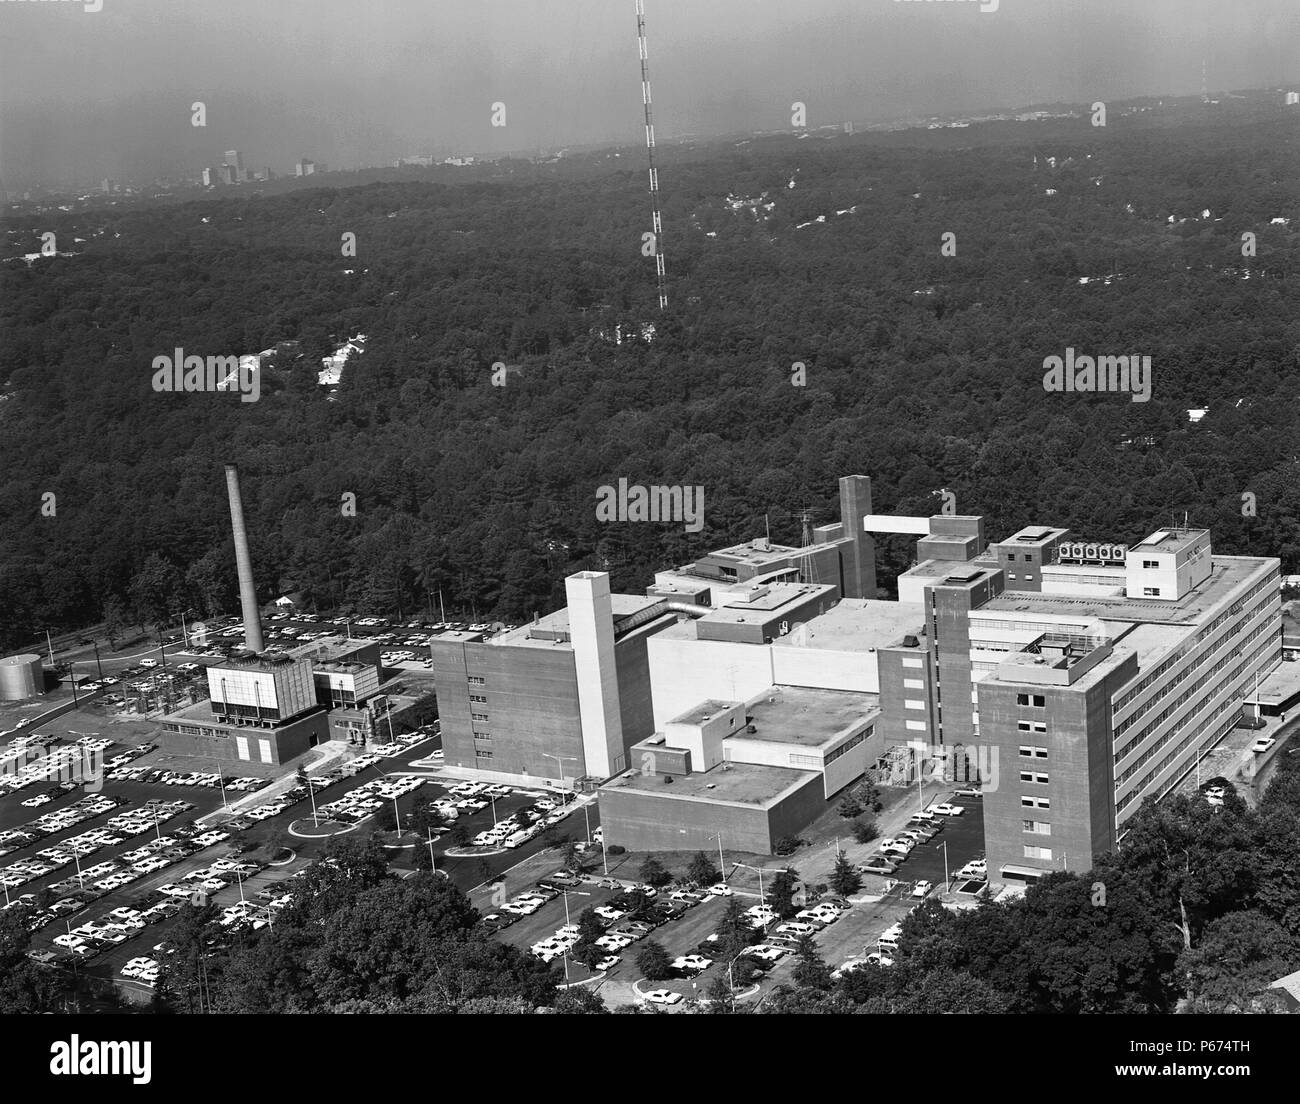 Vista aerea dei Centri per il controllo e la prevenzione delle malattie (CDC) Roybal Campus, Clifton Road, Atlanta, Georgia, 1967. Immagine cortesia centri per il controllo delle malattie / Edward B. McCloskey. () Foto Stock